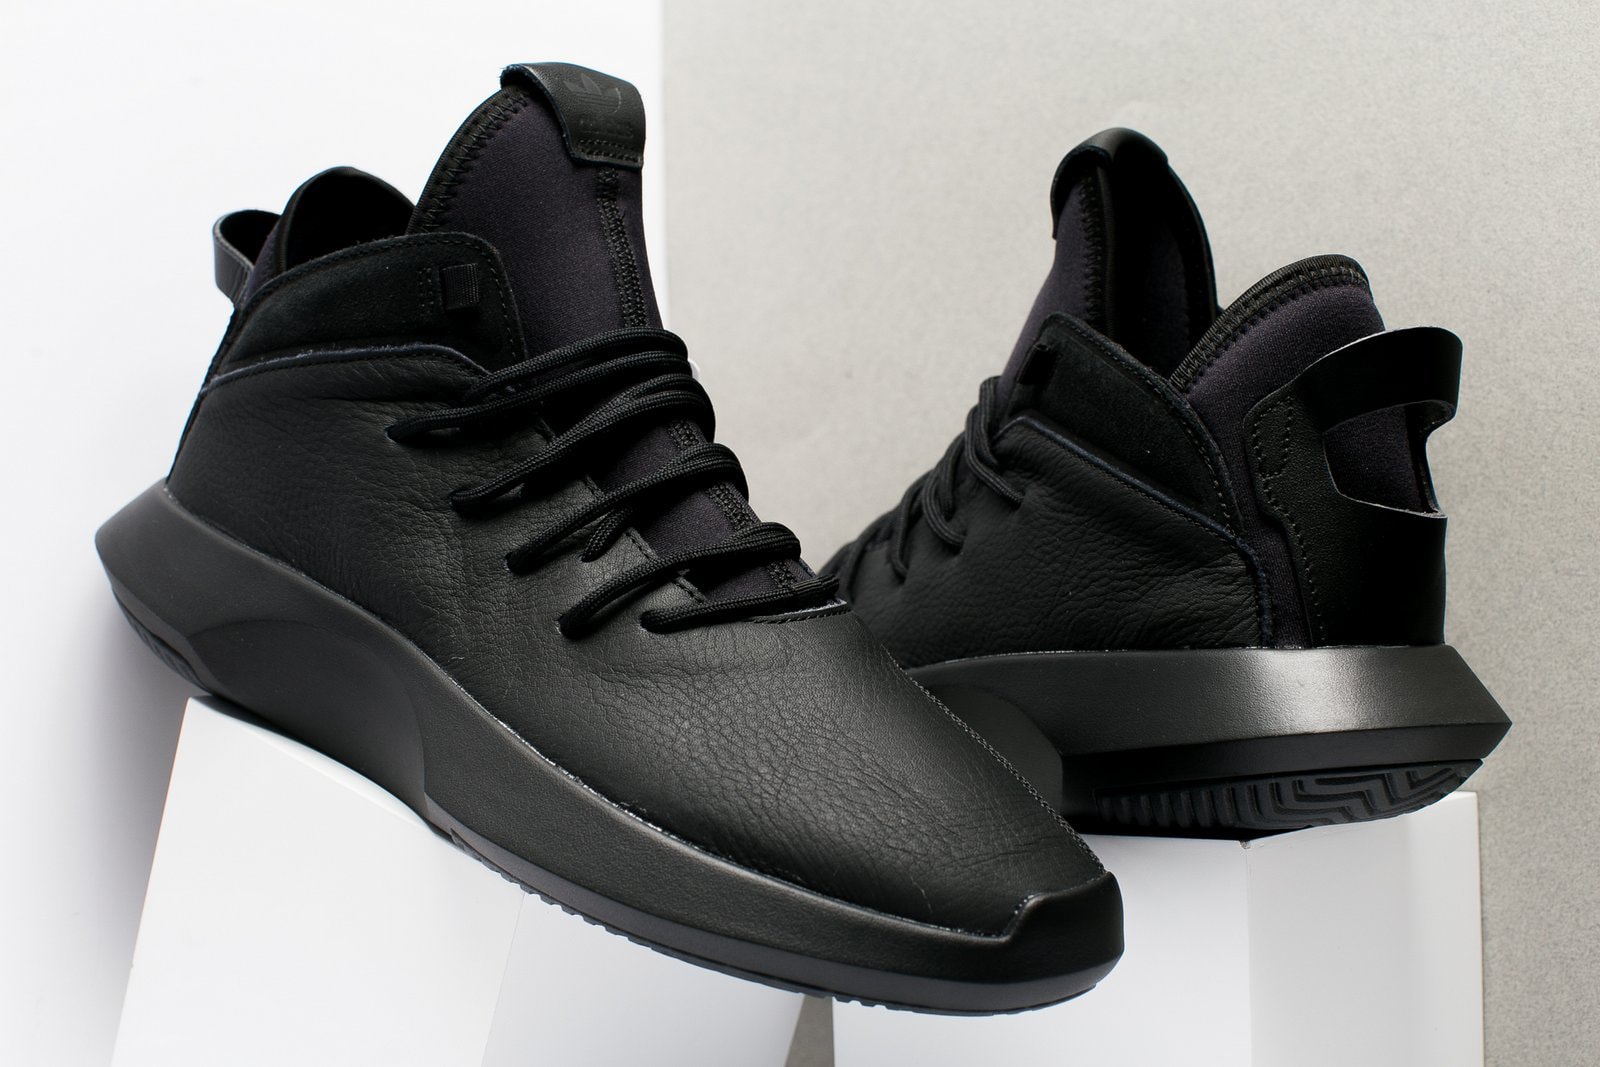 adidas Crazy 1 ADV Black Leather Kobe Bryant